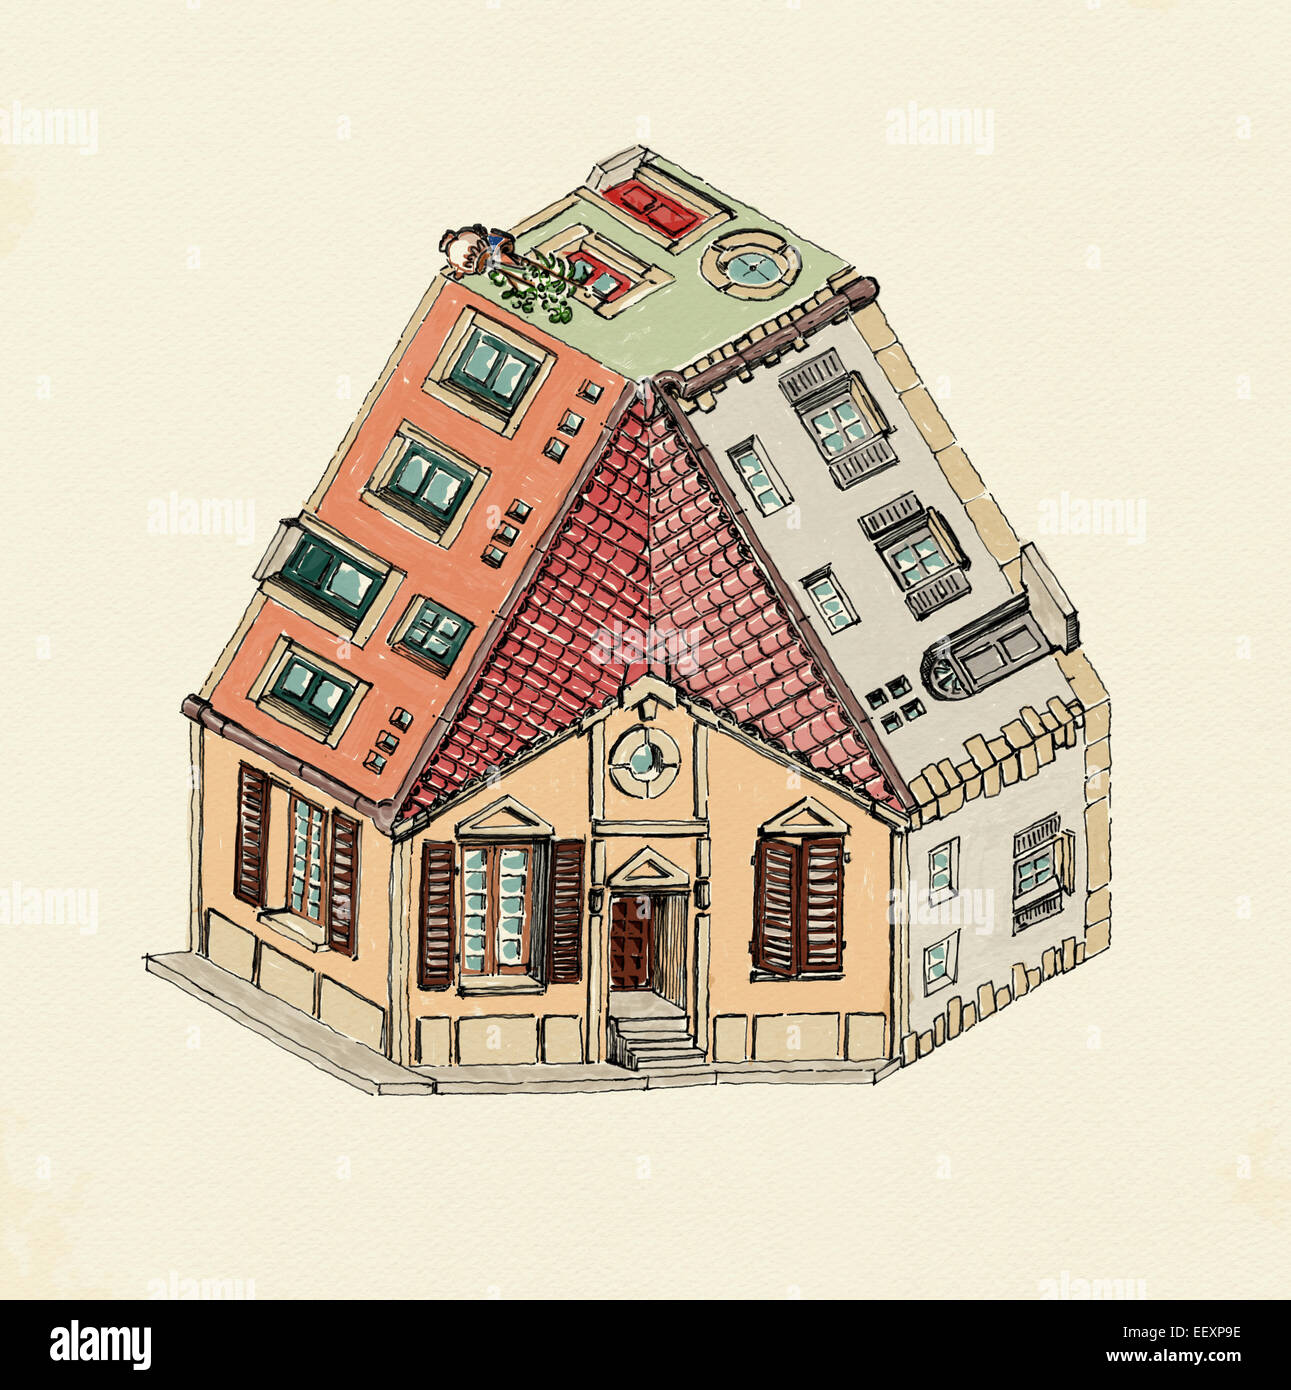 Trois maison façon impossible dans de l'eau couleurs sur papier Banque D'Images